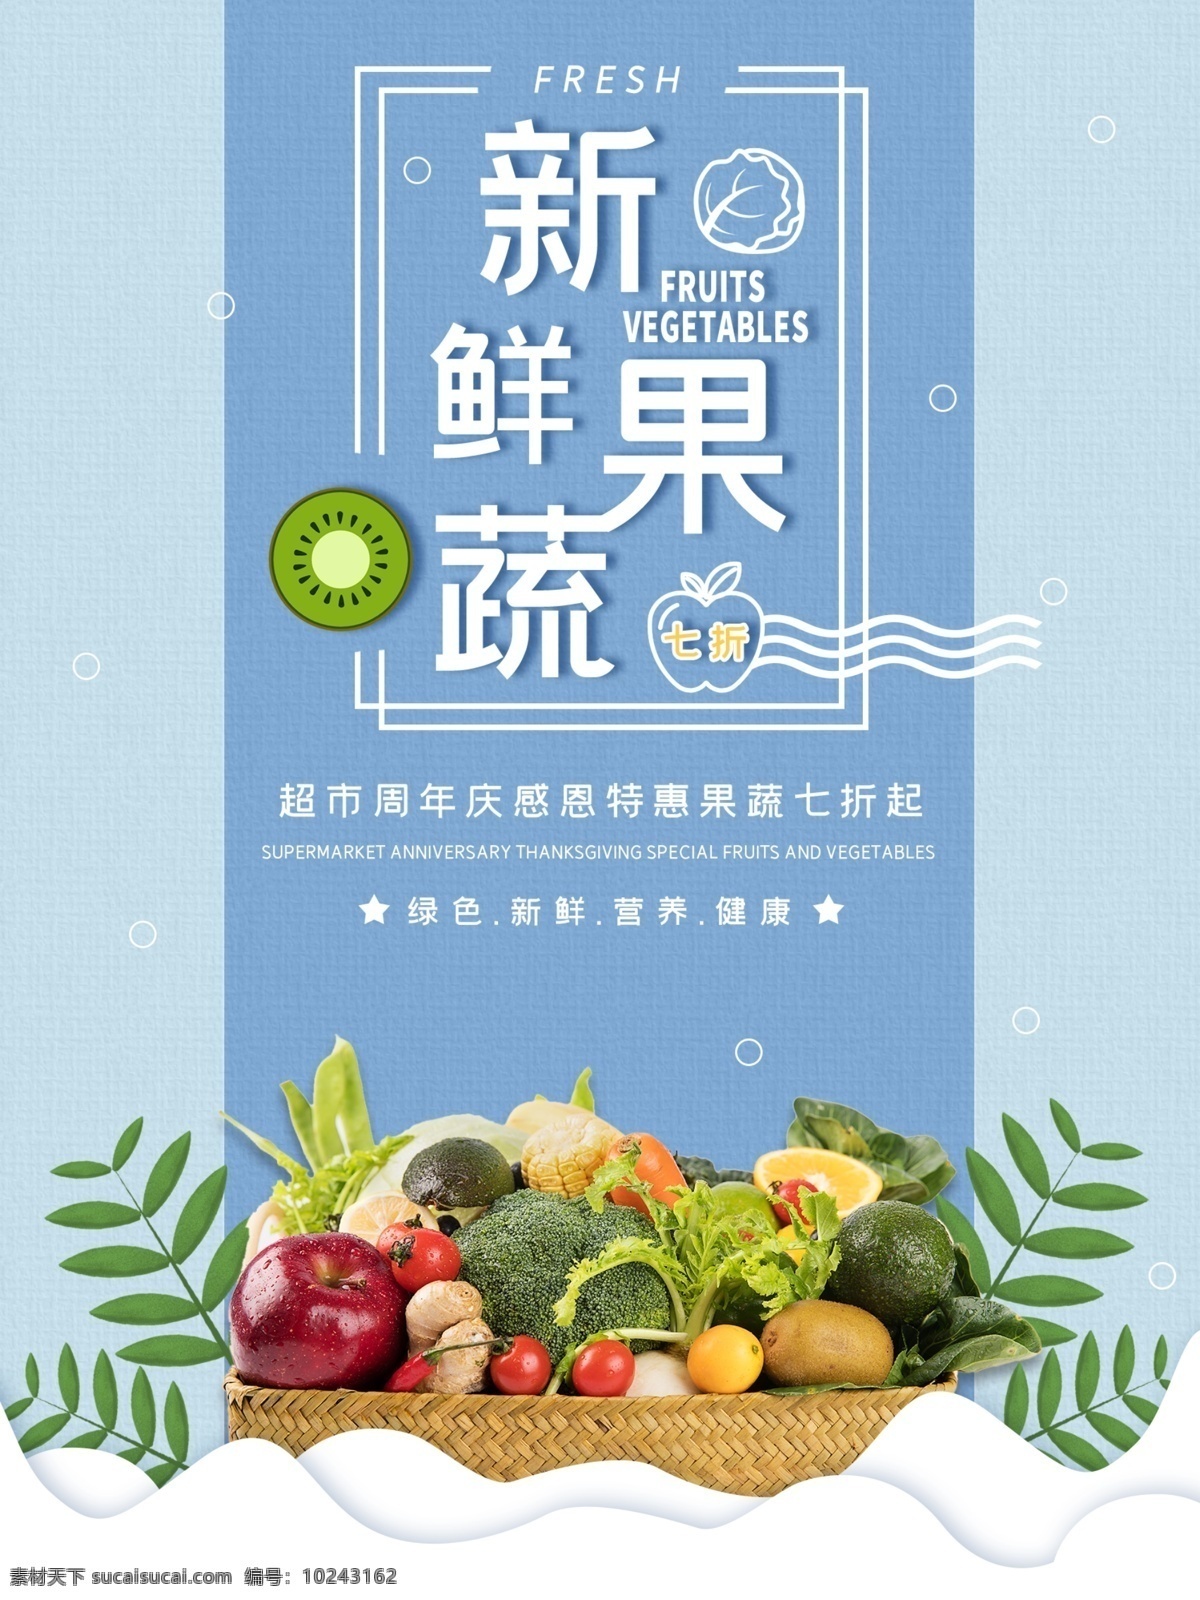 新鲜 果蔬 超市 促销 海报 超市促销 超市换购活动 超市促销海报 蔬菜水果促销 超市果蔬海报 蔬菜水果